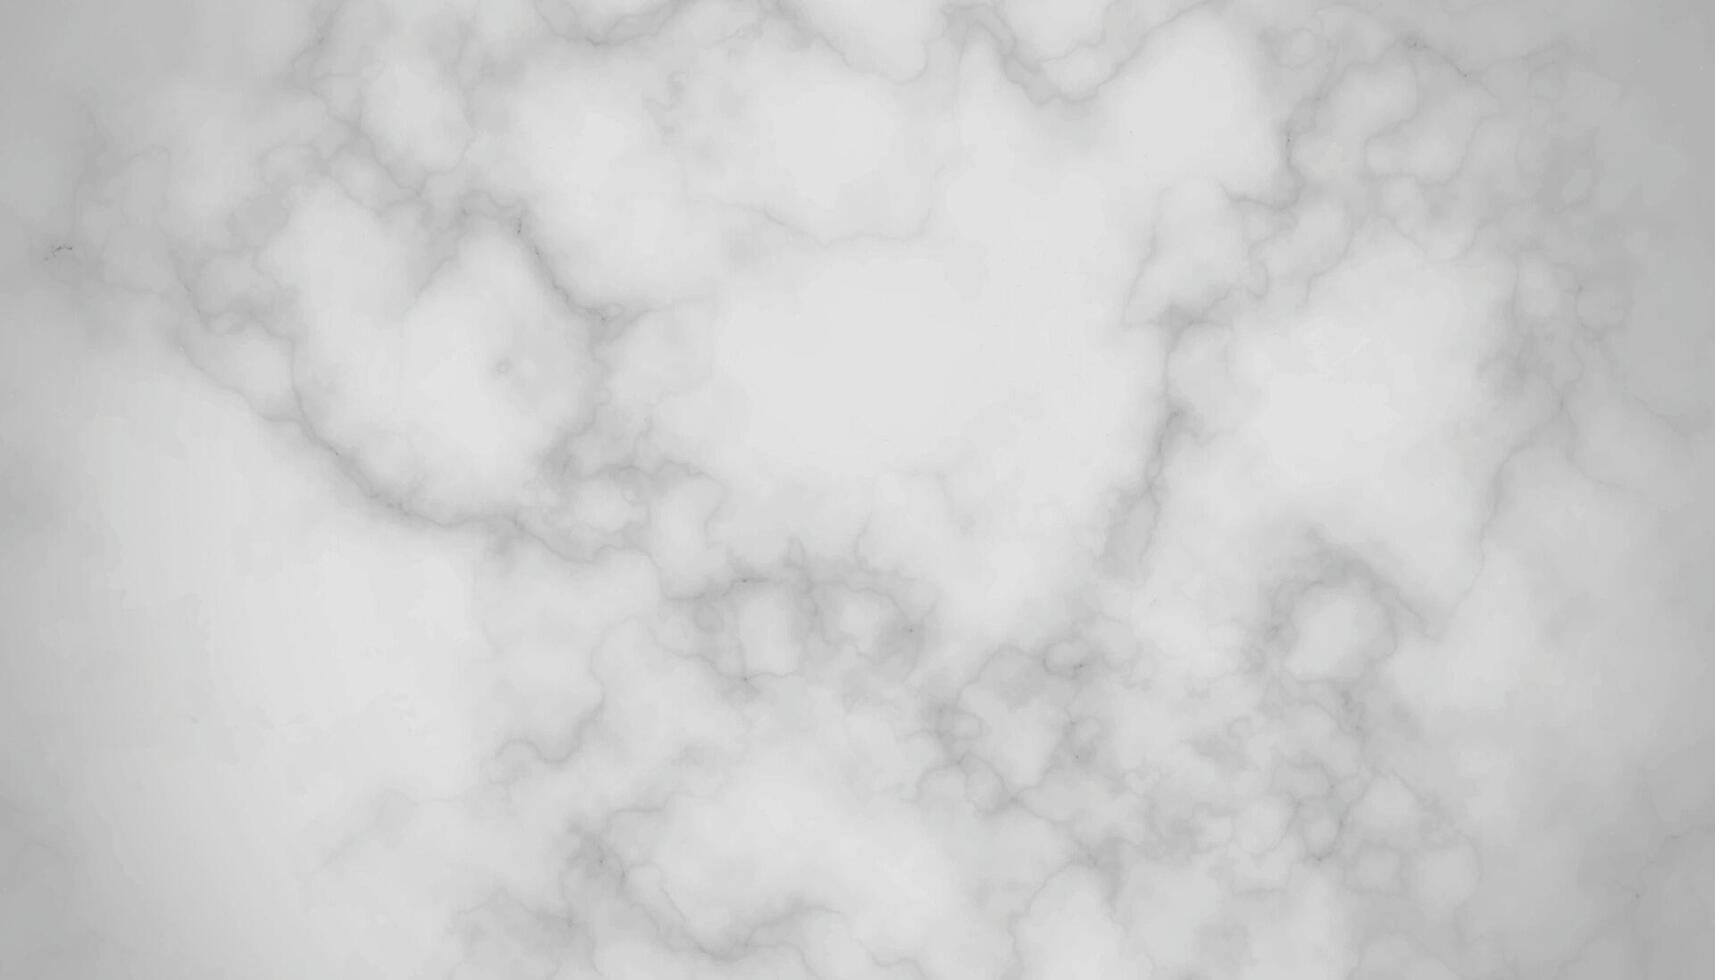 wit marmeren structuur panorama luxueus achtergrond patroon. wit en zwart steen keramisch kunst muur interieur backdrop ontwerp. marmeren met hoge resolutie vector